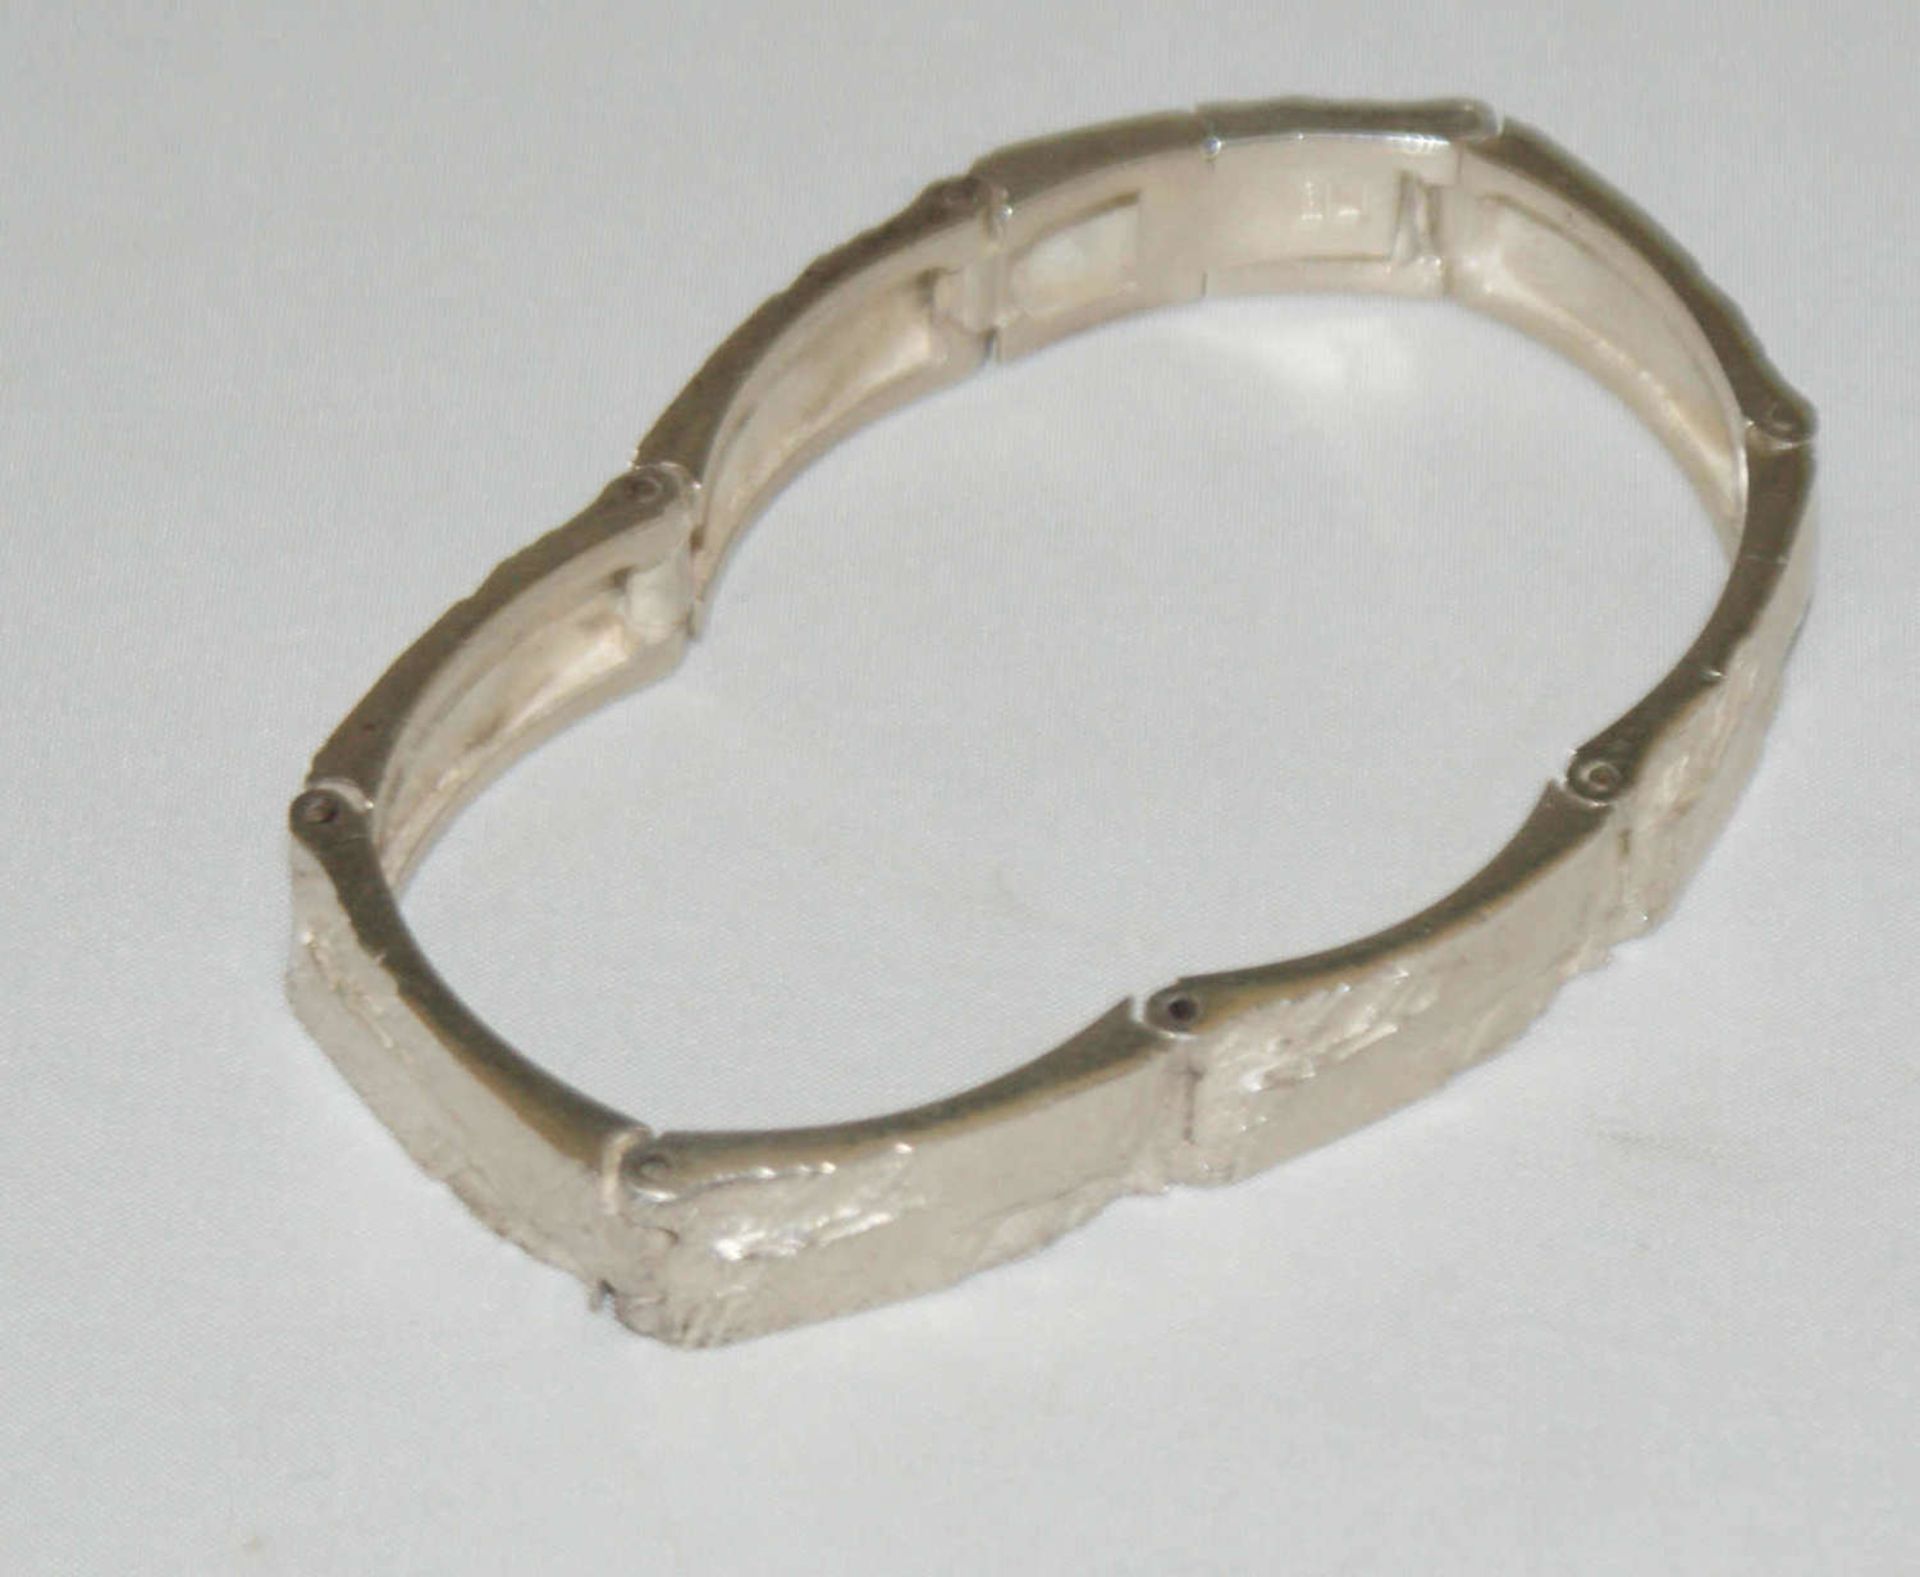 Armband, 925er Silber, in Hammeroptik. Länge ca. 18,5 cm. Gewicht ca. 27 gr. - Bild 2 aus 2